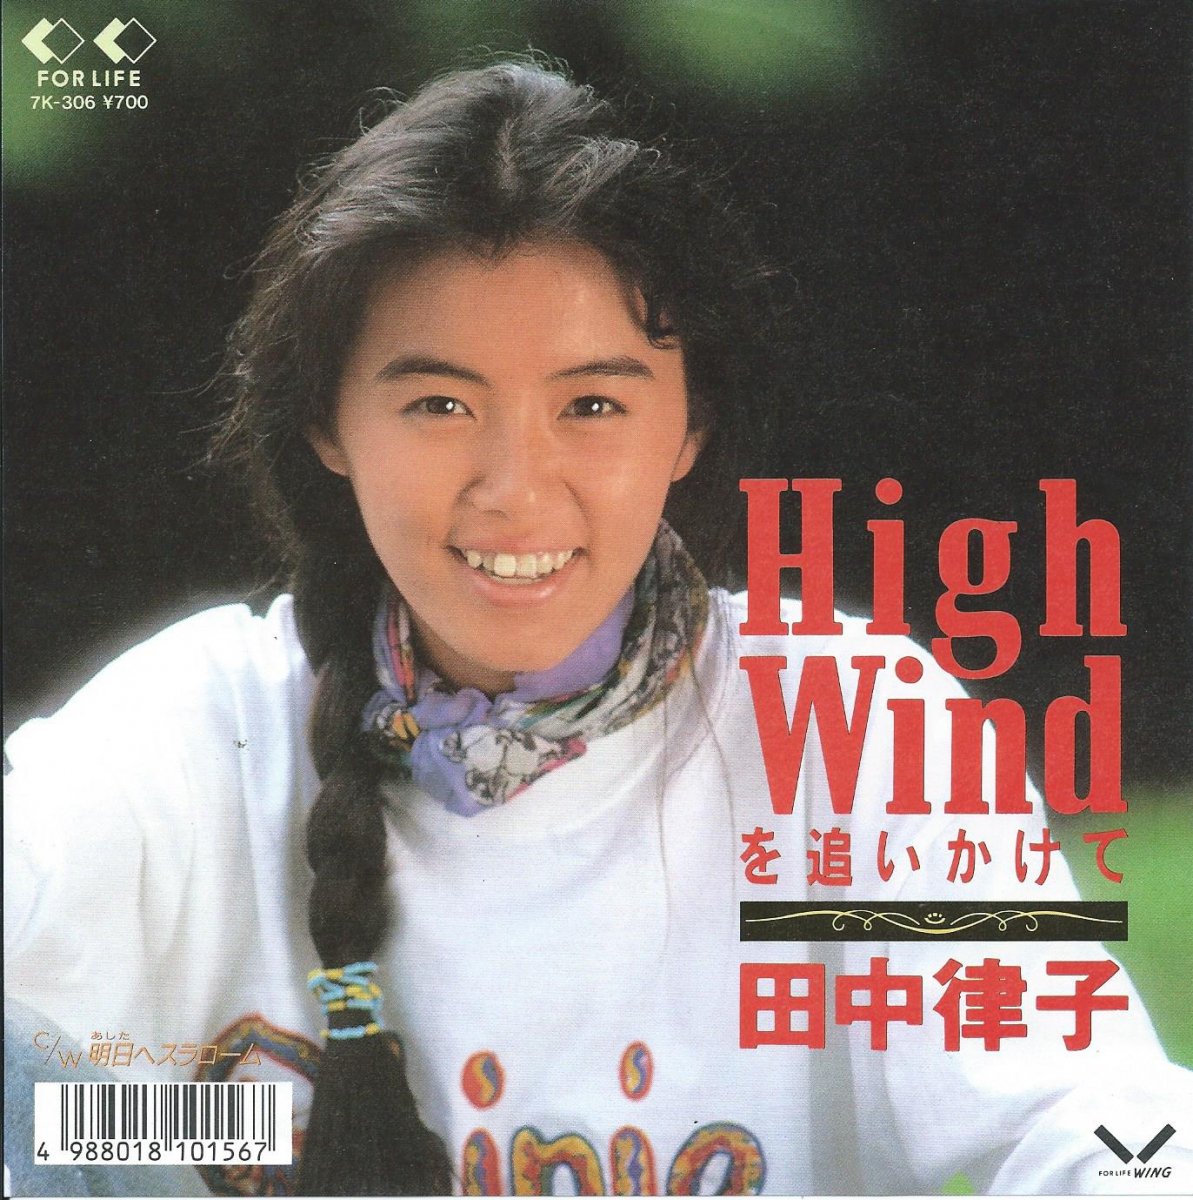 田中律子 Ritsuko Tanaka High Windを追いかけて 明日へスラローム 7 Hip Tank Records